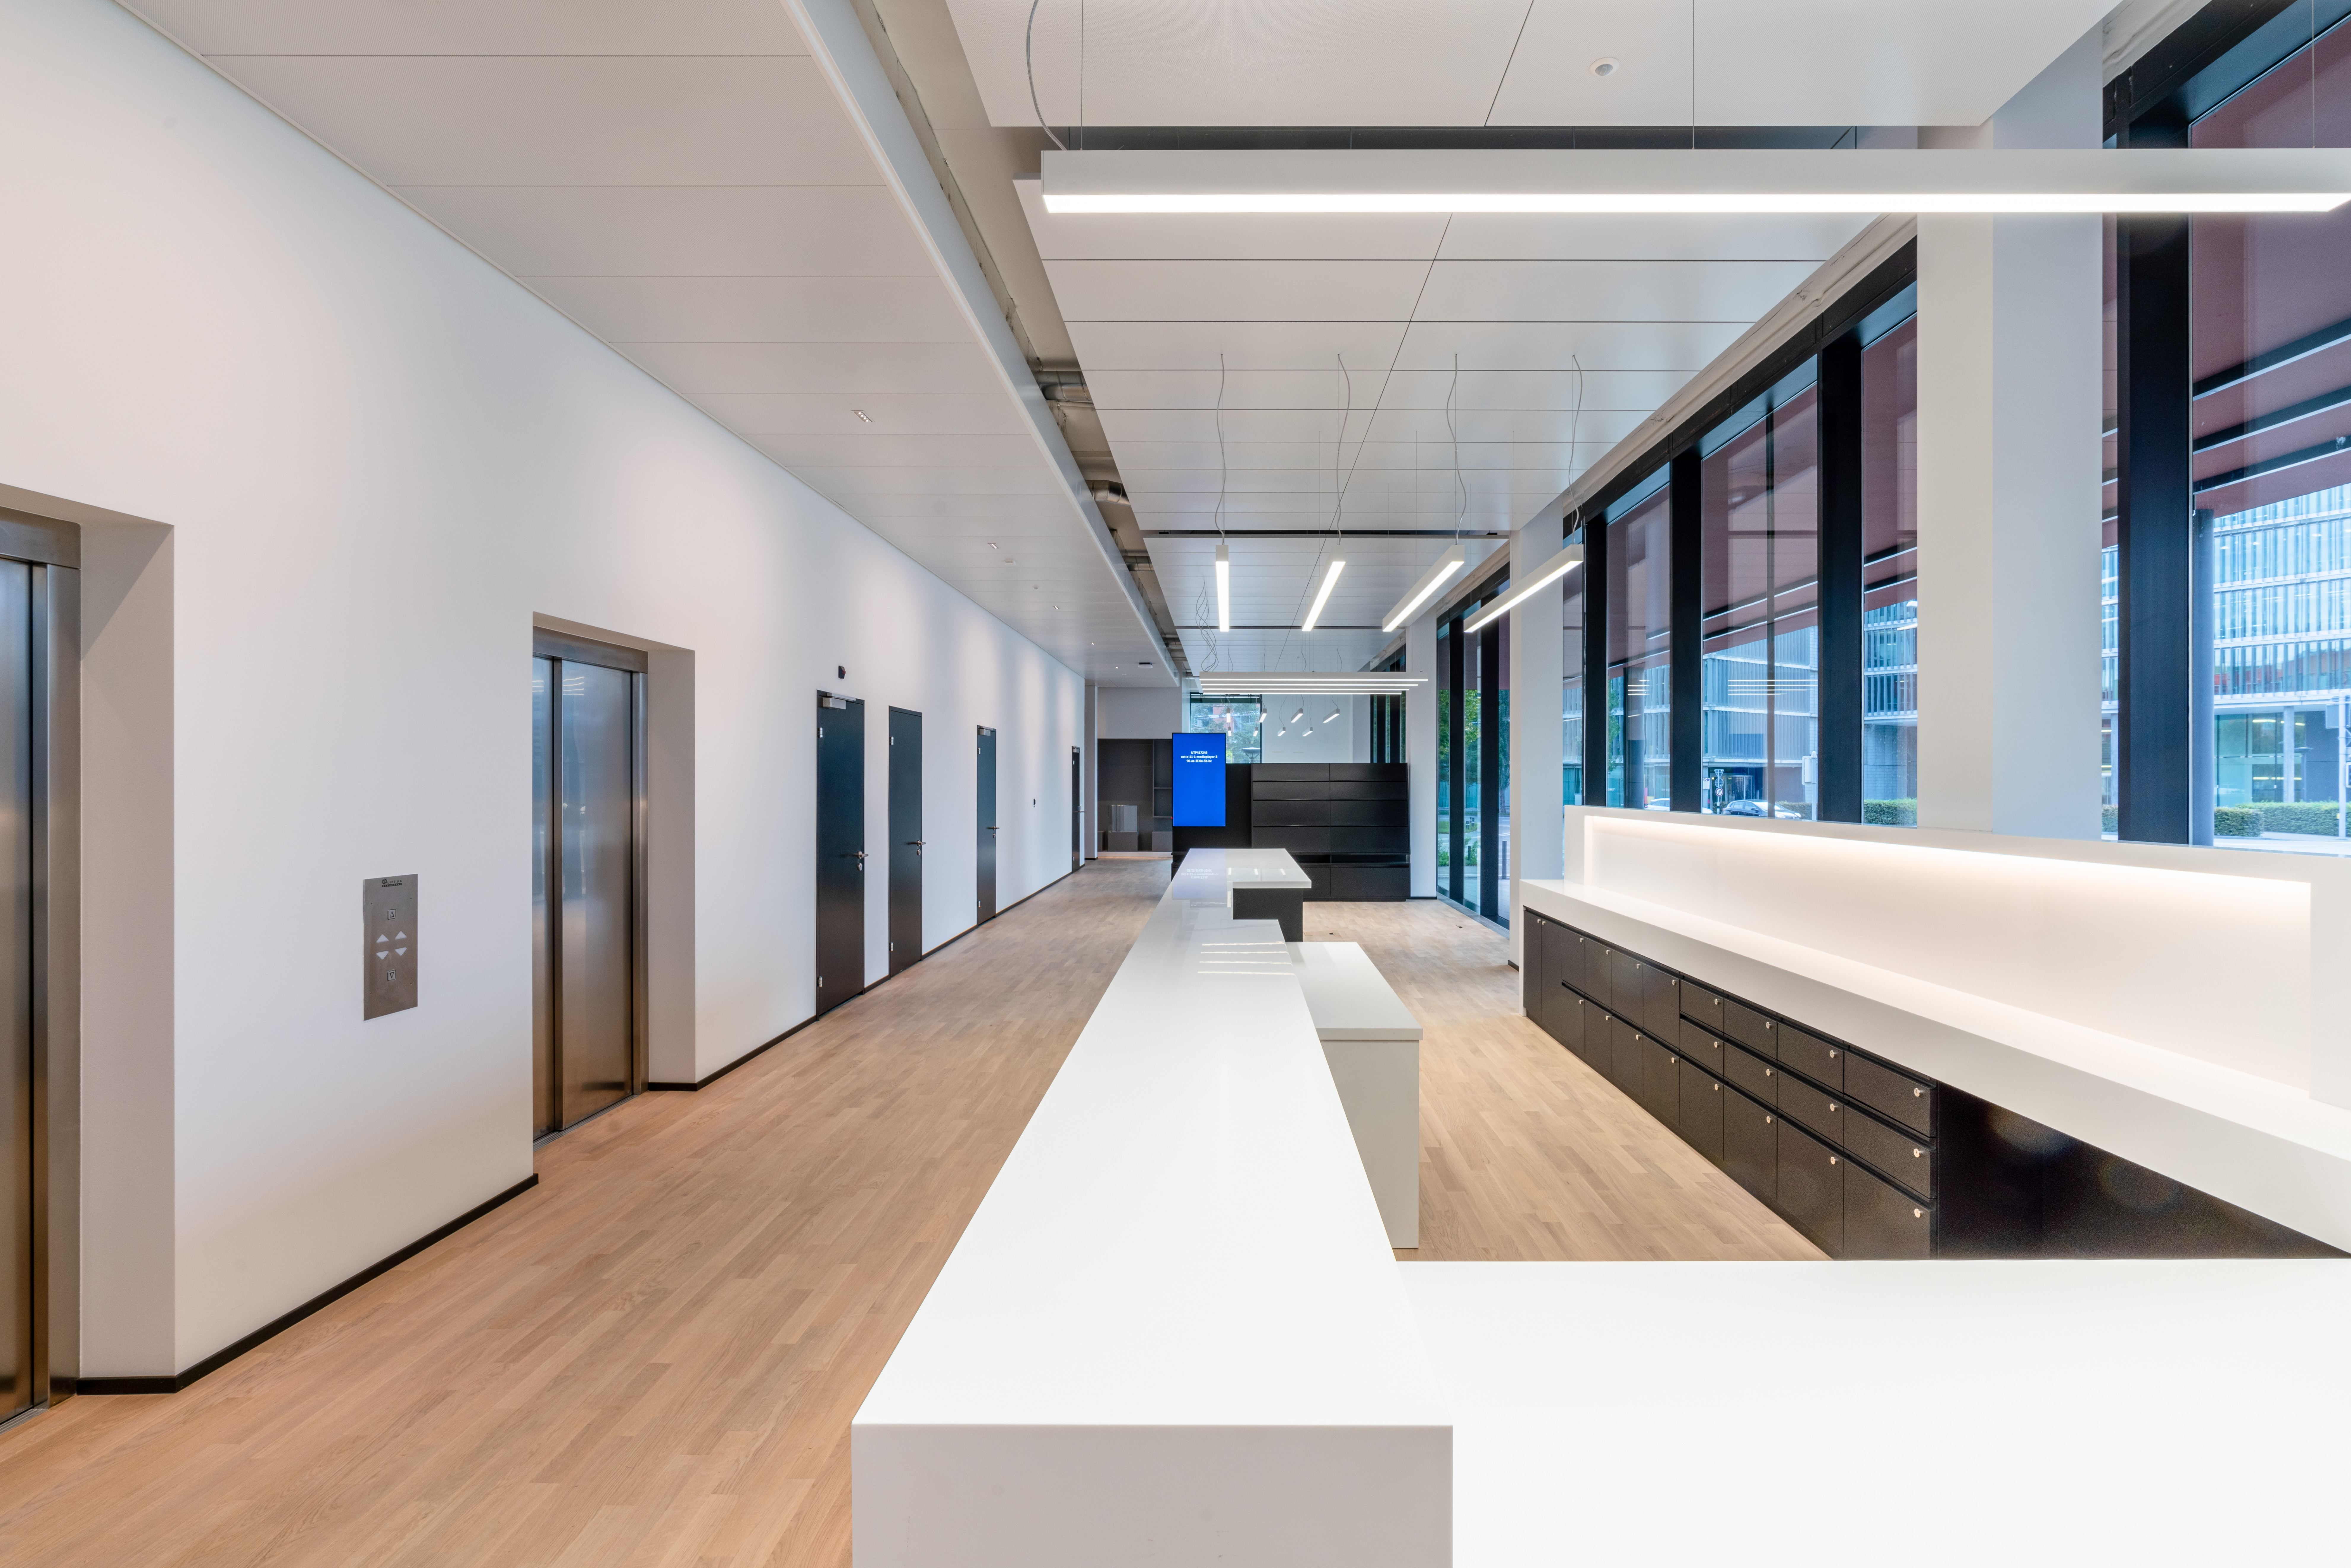 Bürogebäude OCTAVO der ETH in Oerlikon. Bild Tom Kawara, 2.10.2020